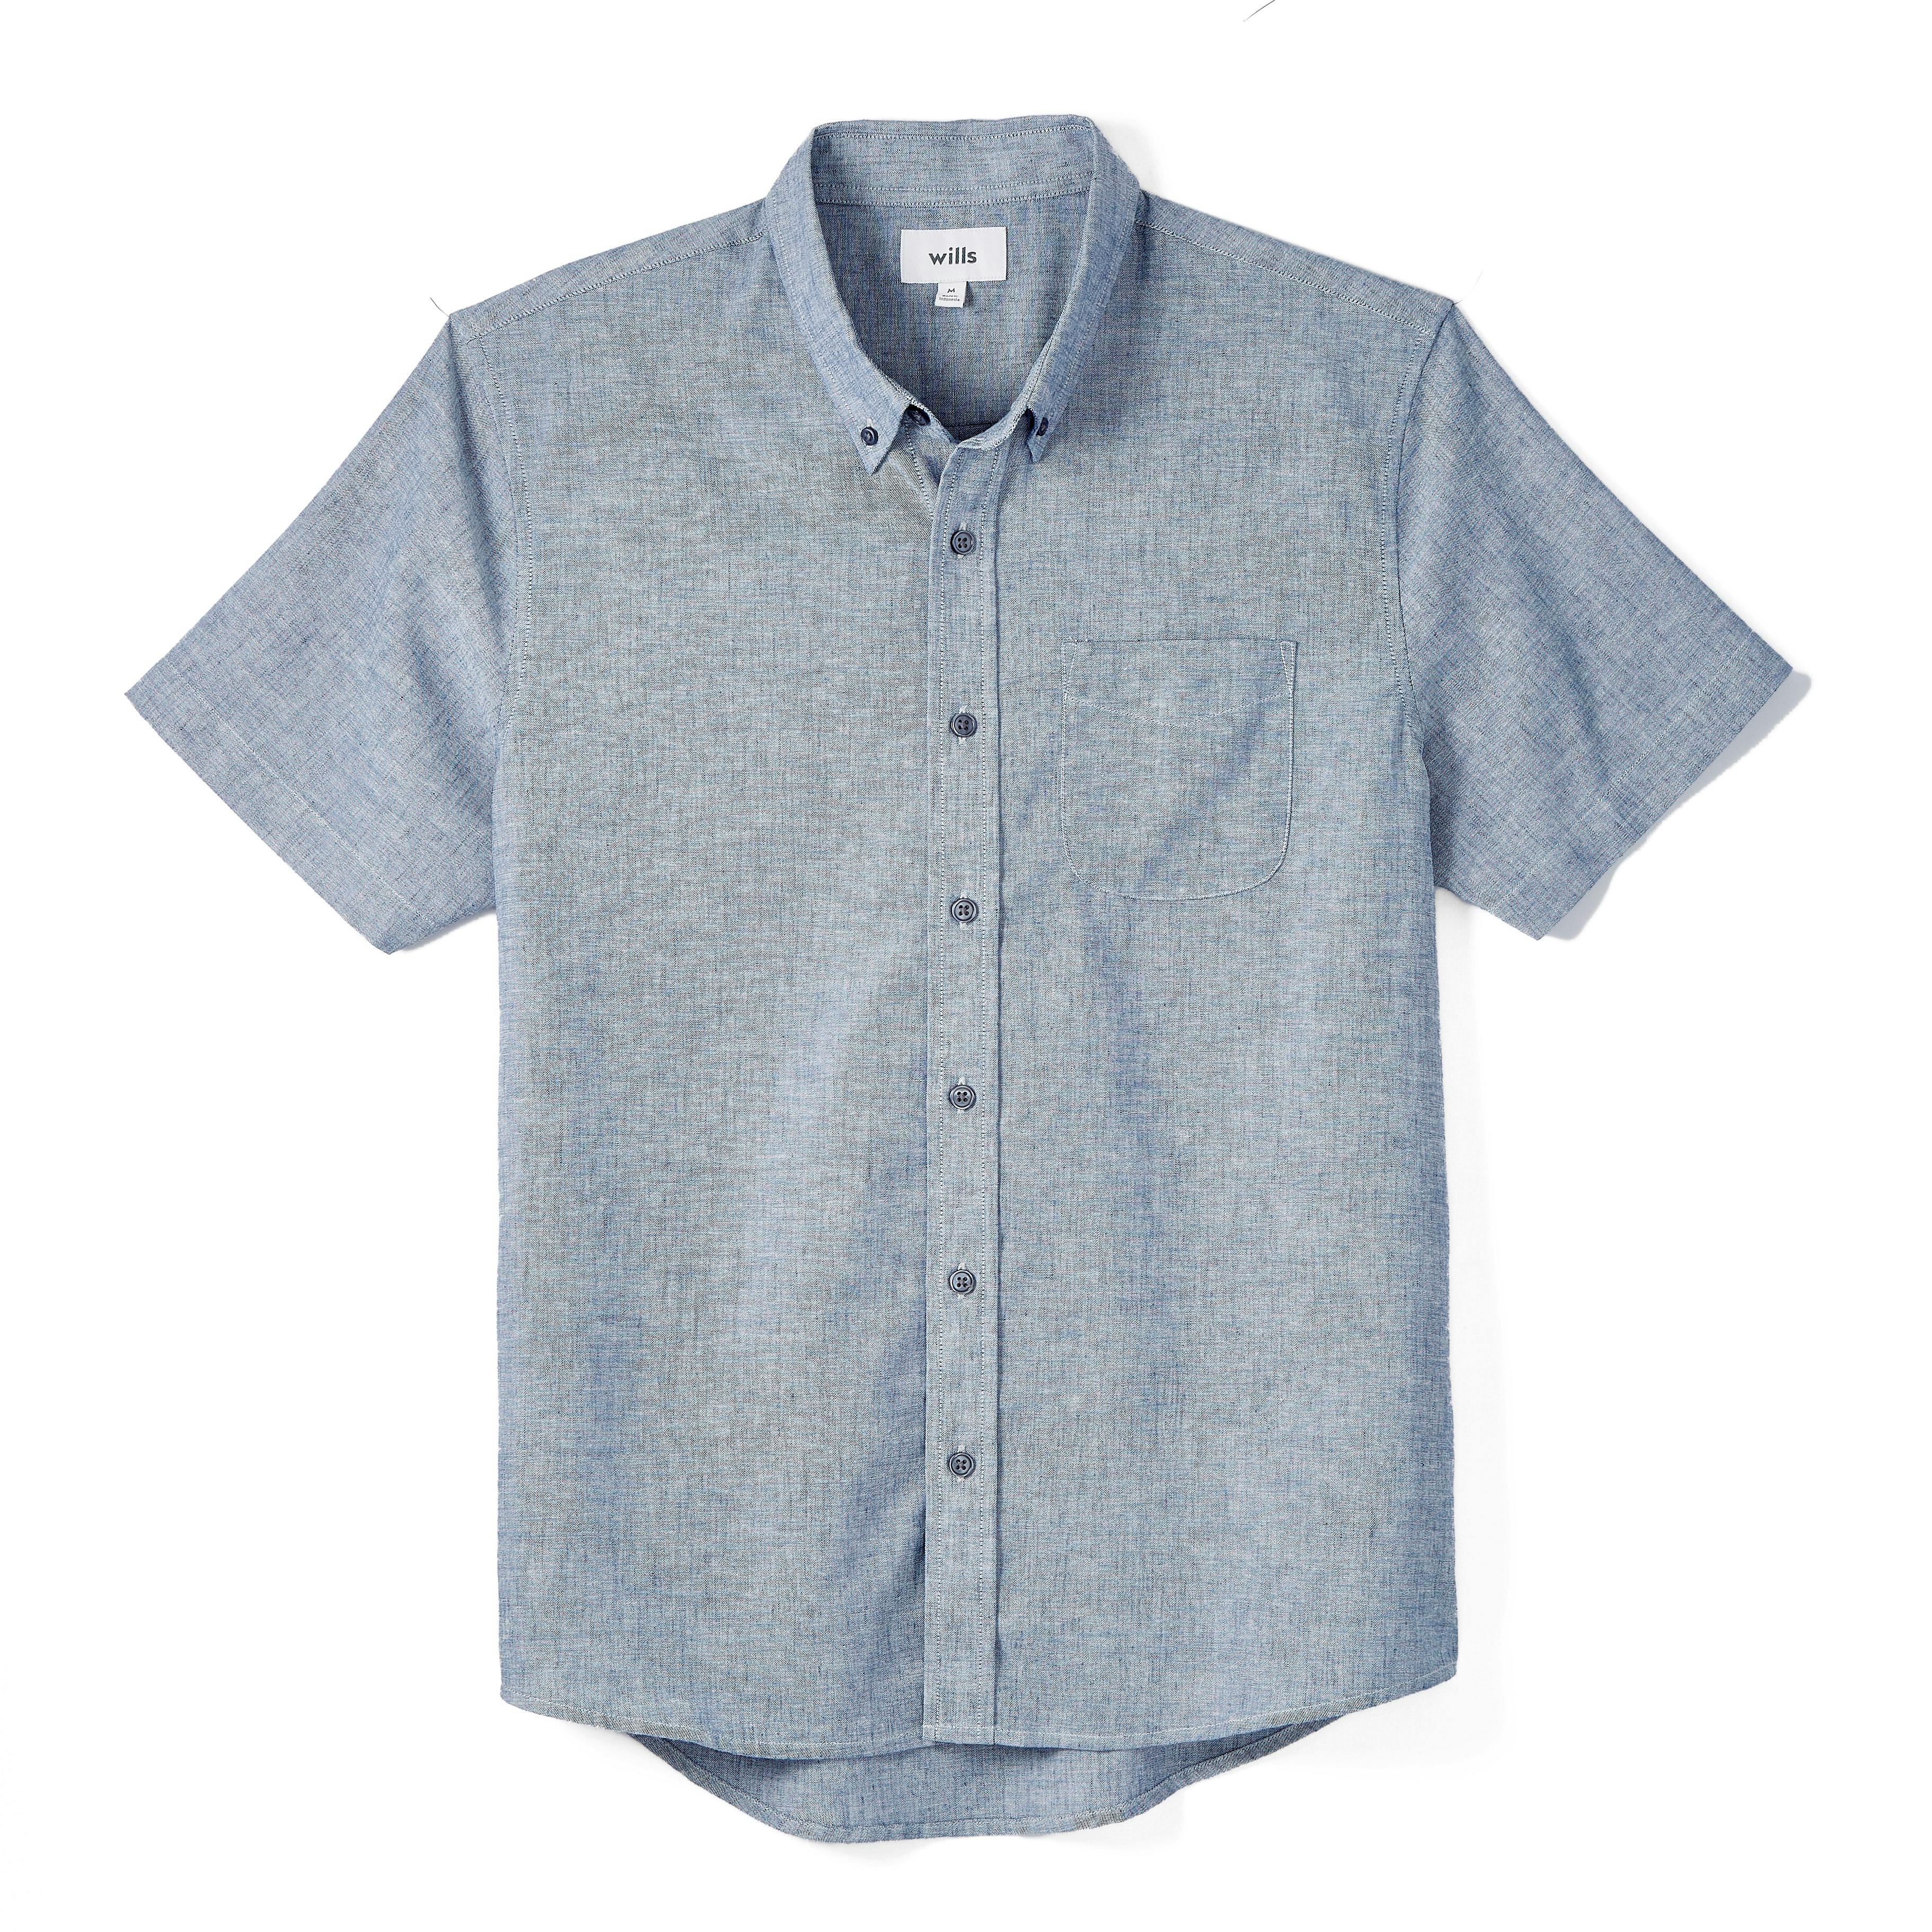 Wrinkle Free Linen Short Sleeve Shirt